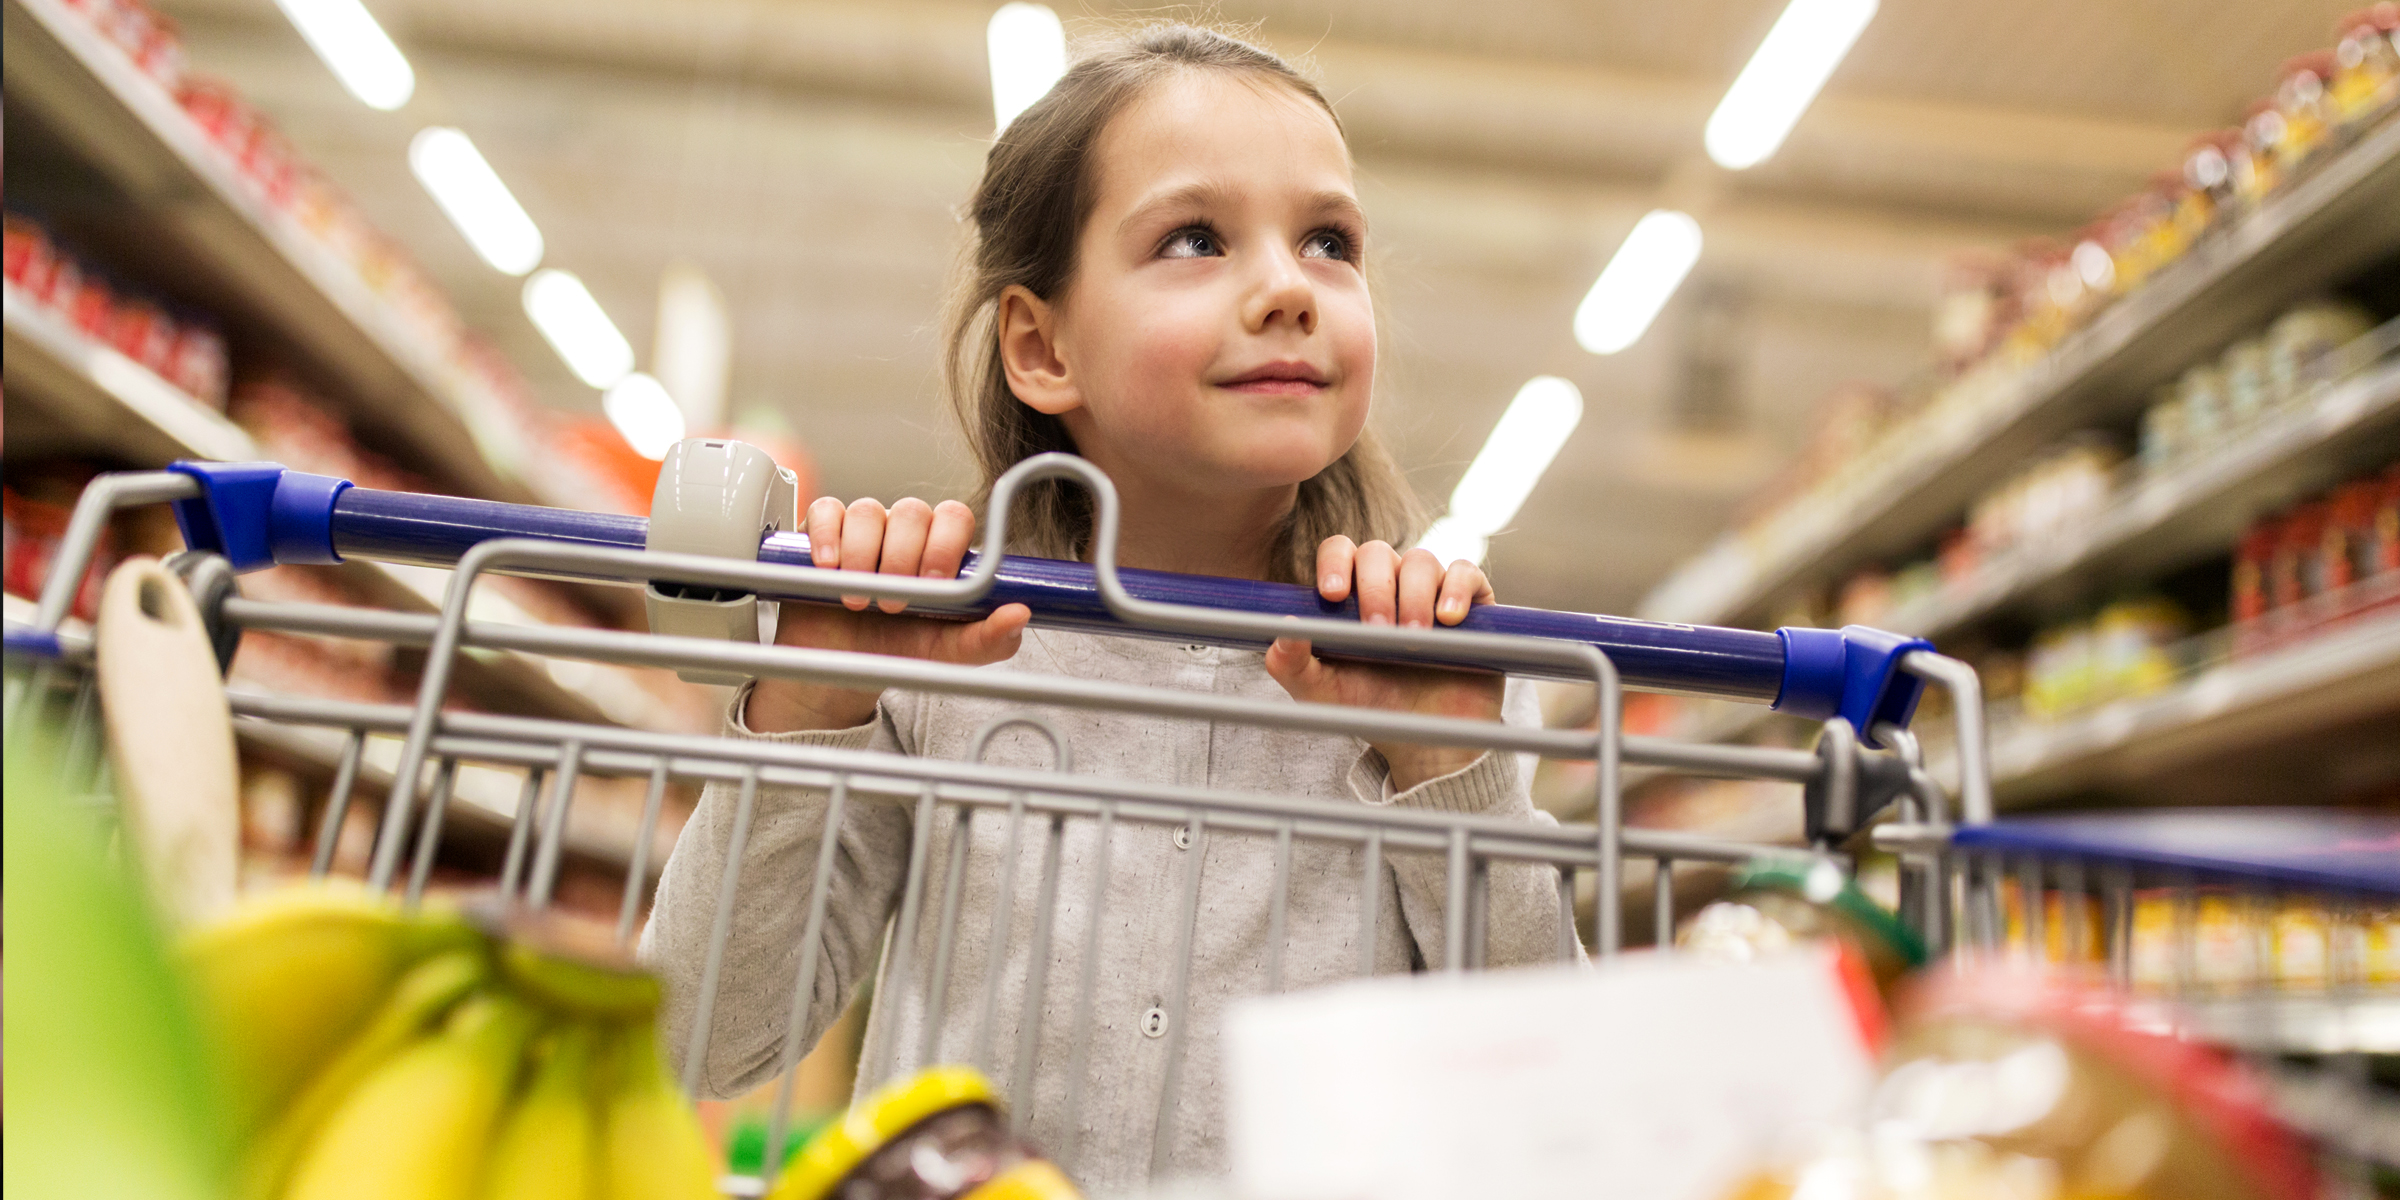 Une petite fille poussant un chariot de supermarché | Source : Shutterstock